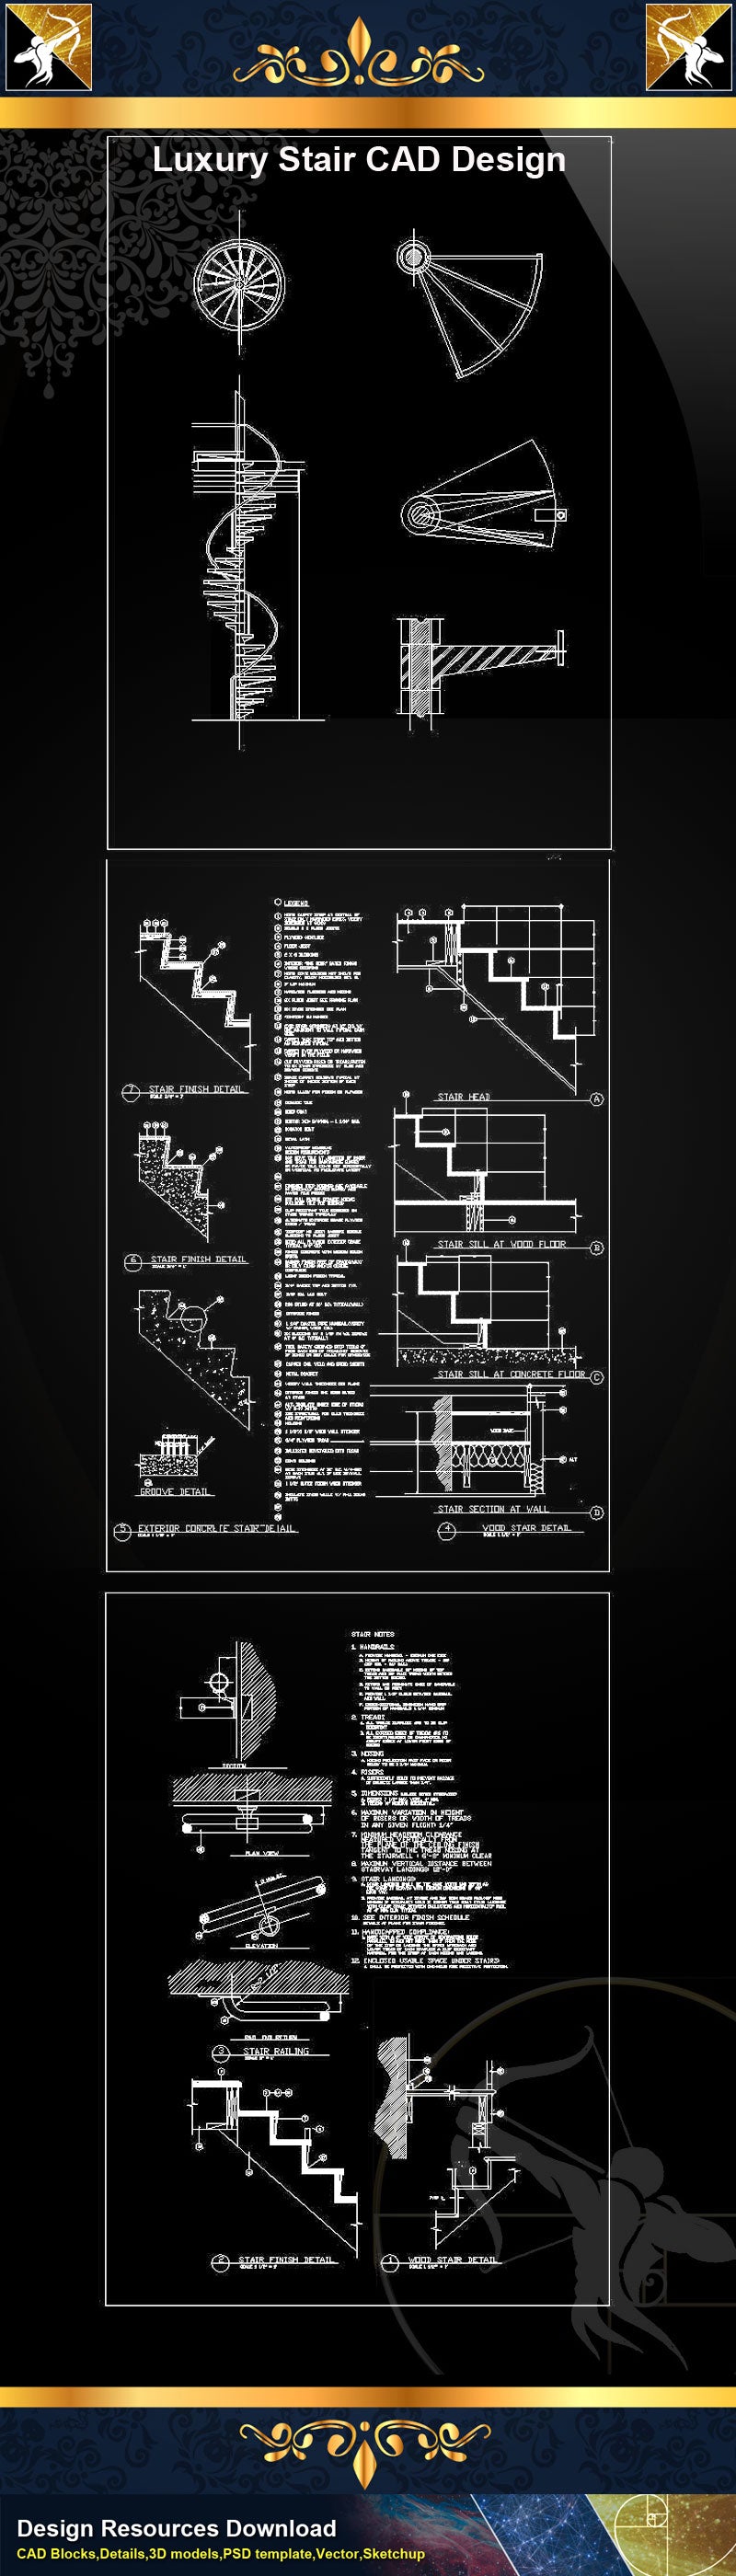 ★Luxury Stair Design CAD Drawings